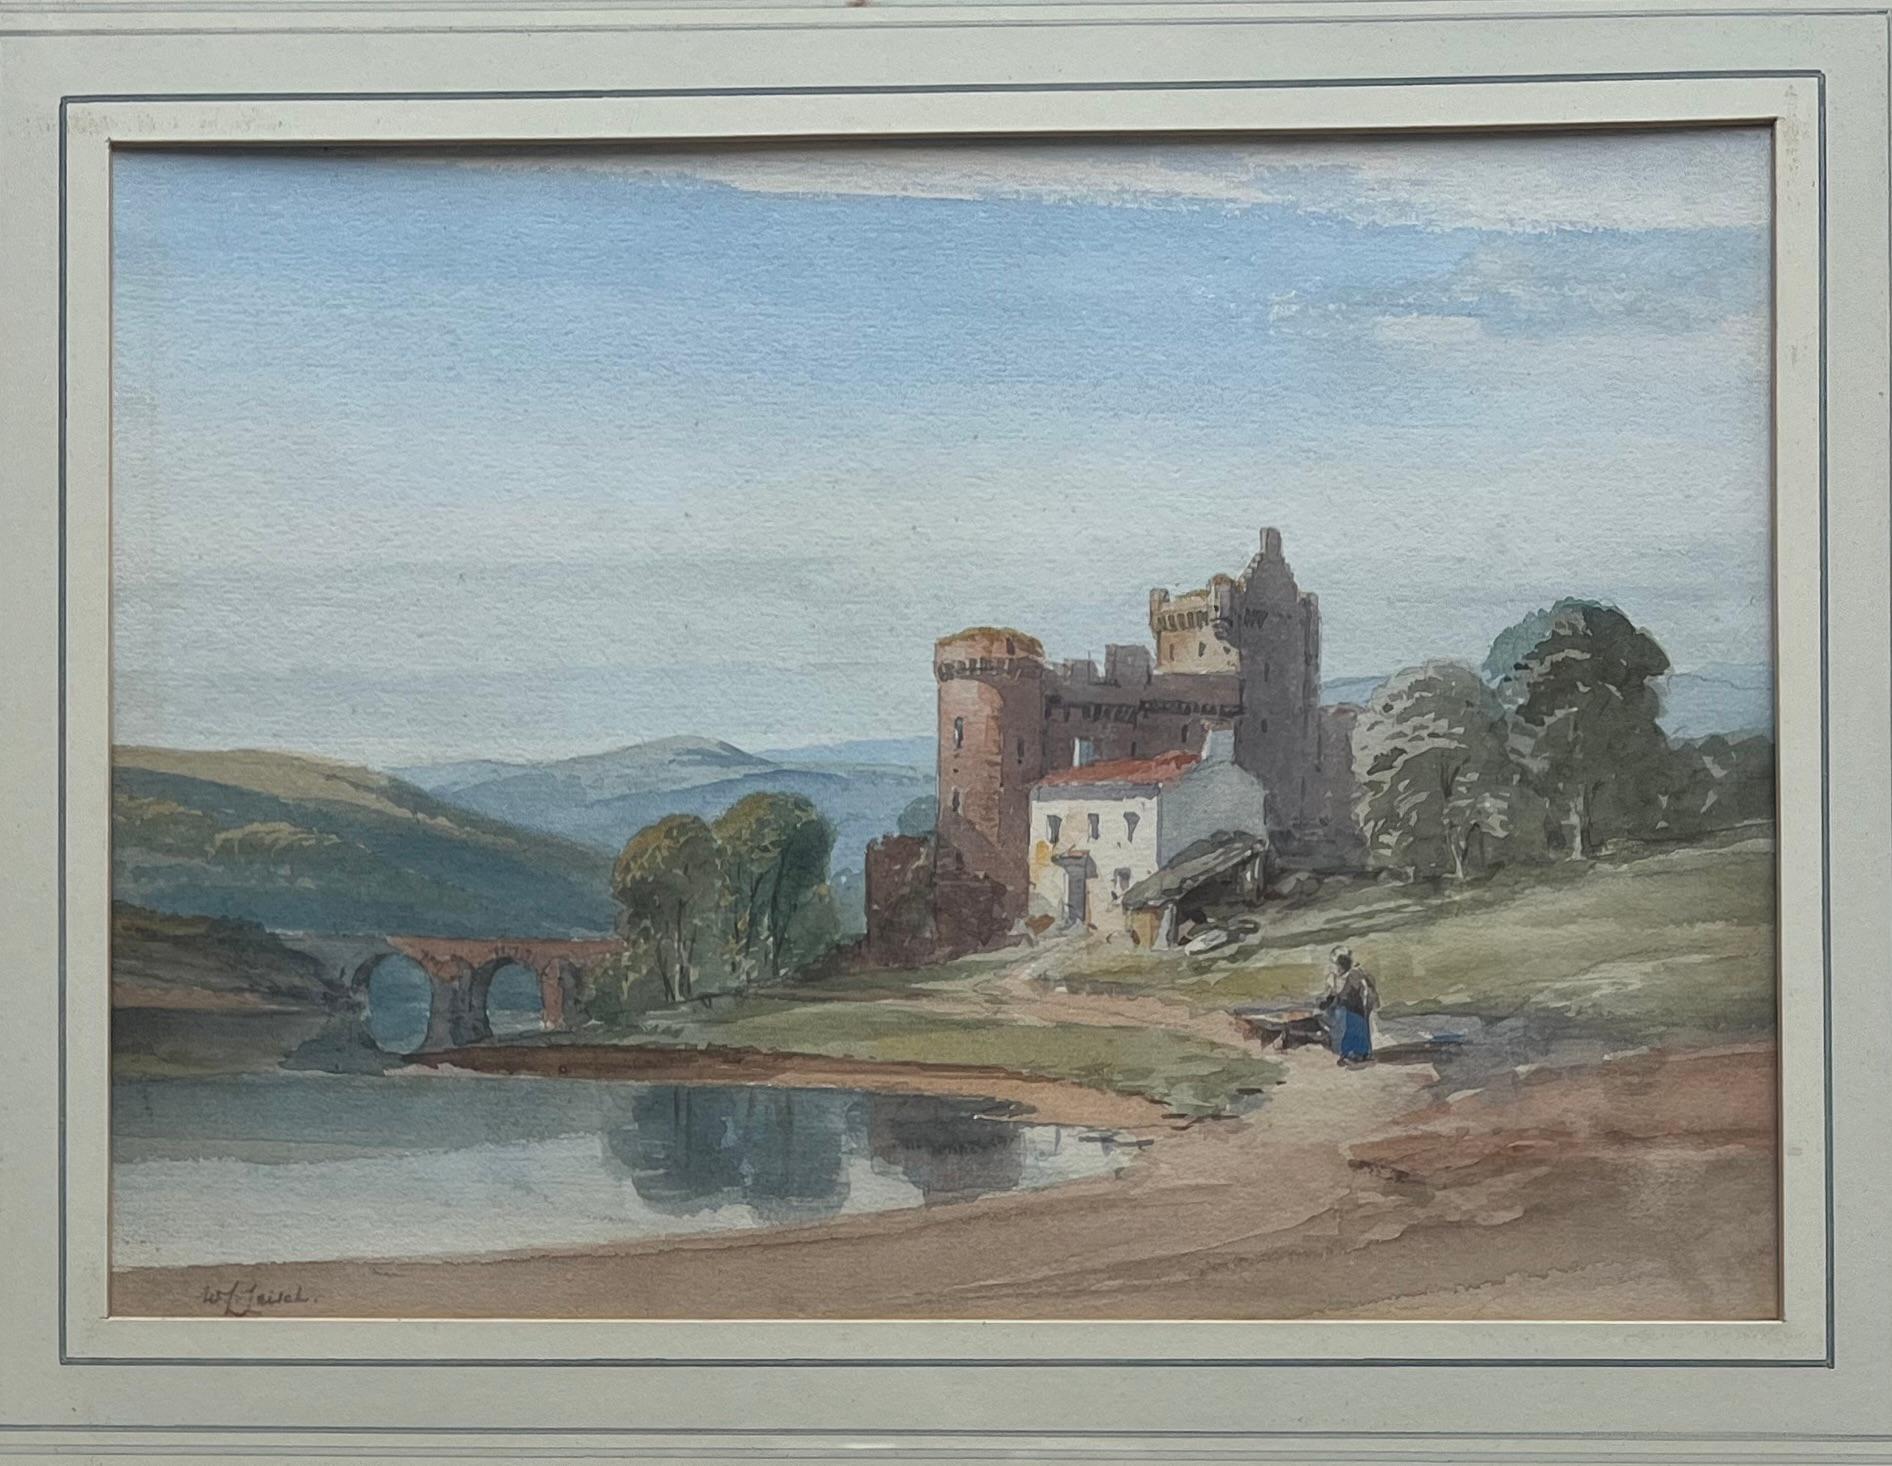 Aquarelle de l'English School, Un personnage près d'un château et d'un loch écossais - Art de William Leighton Leitch